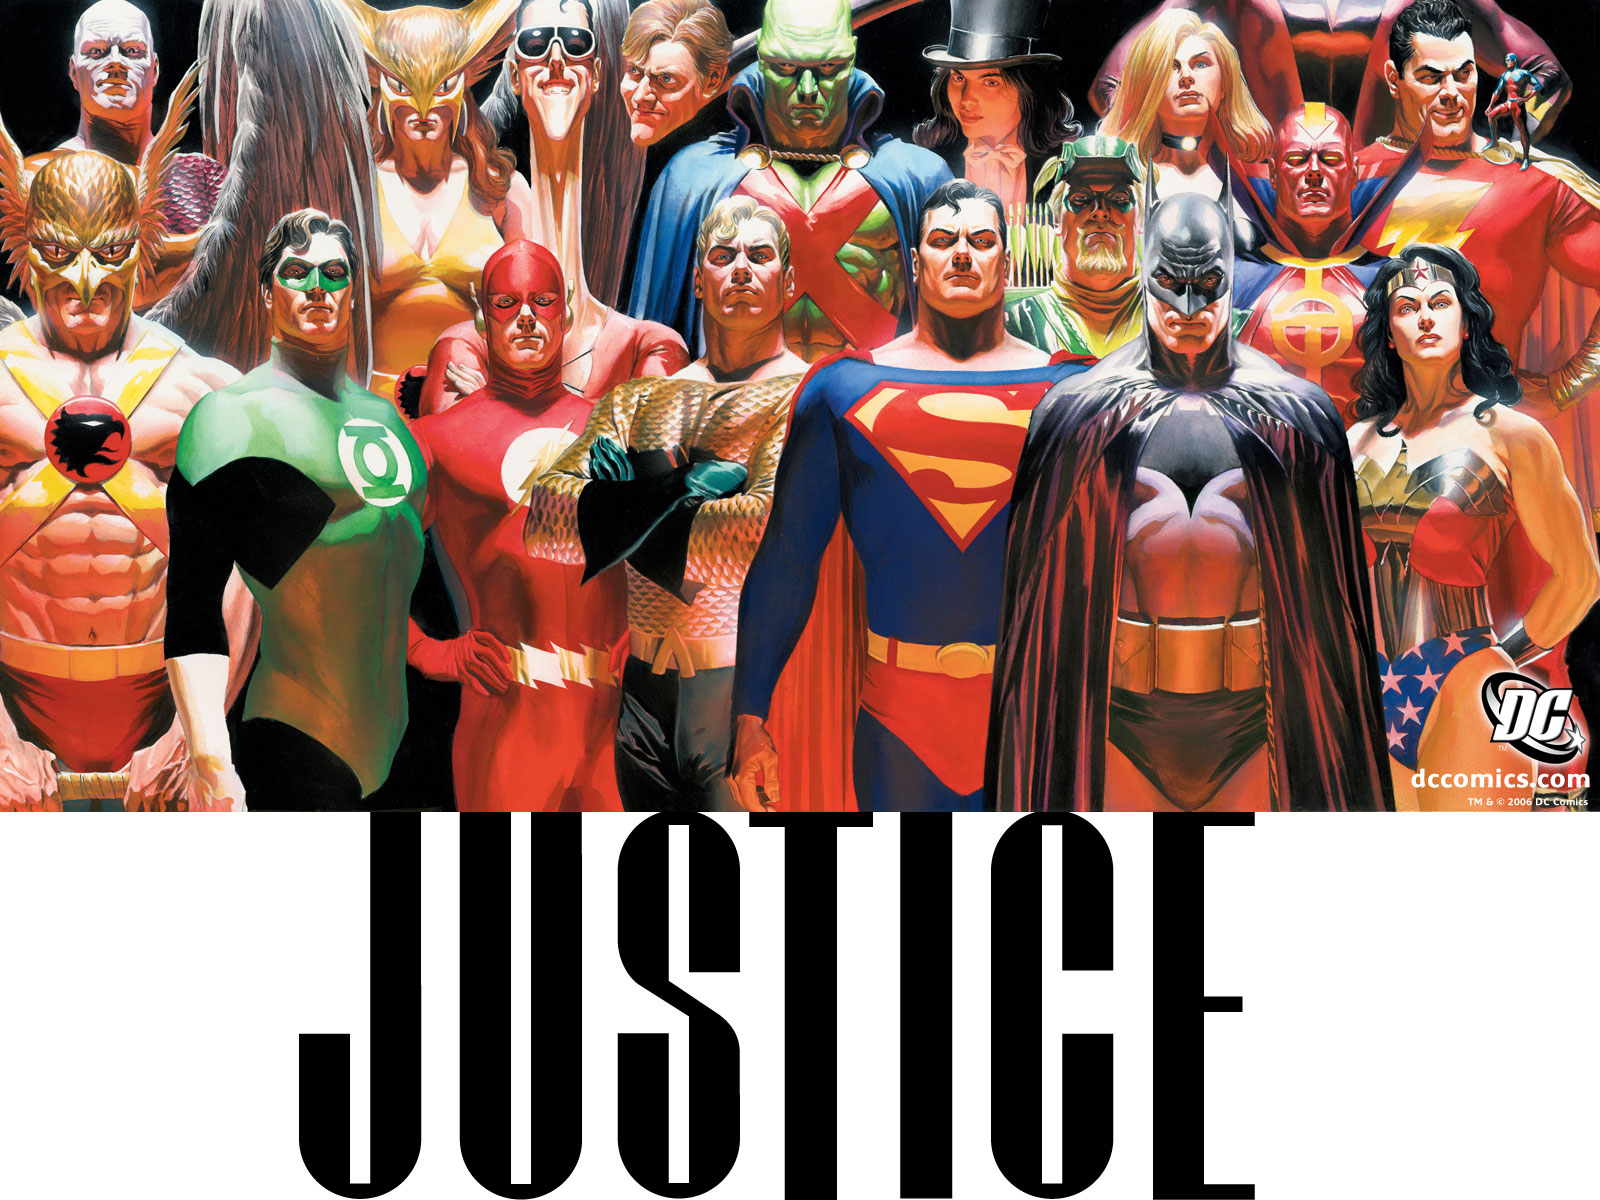 Wallpaper - Justice Dc Comics Alex Ross - HD Wallpaper 